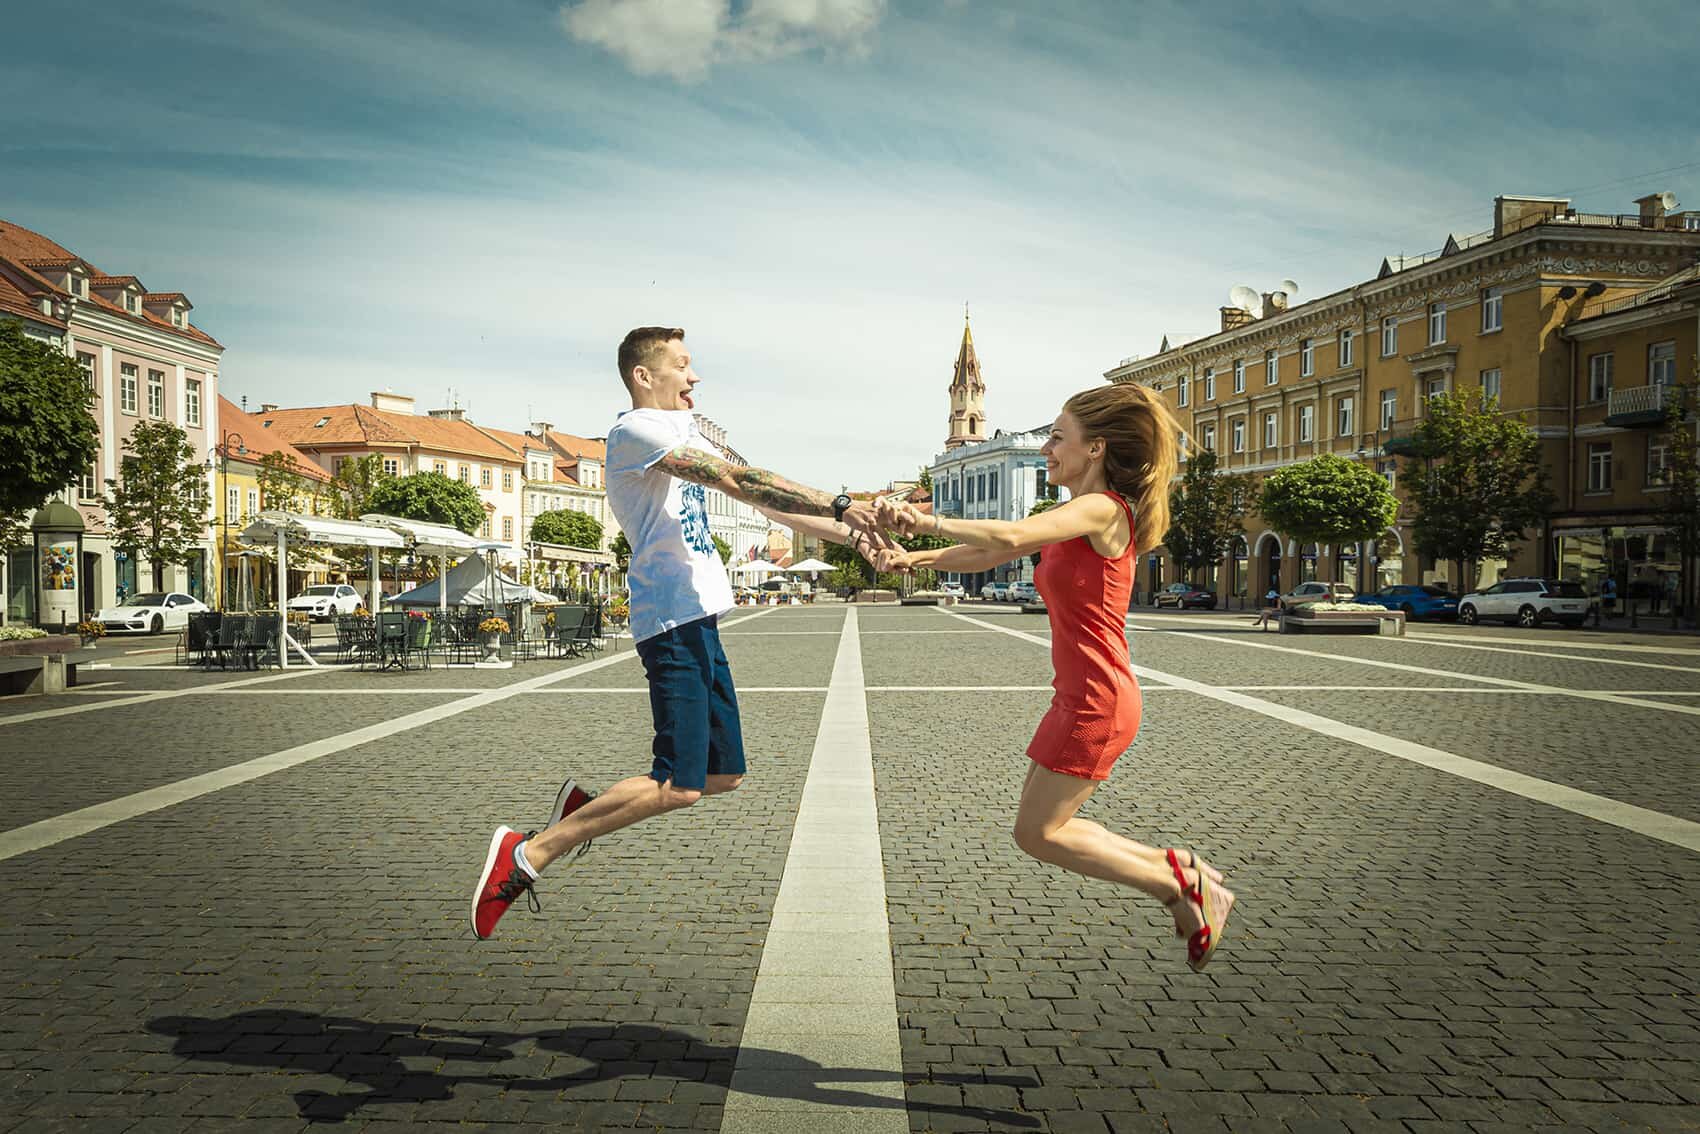 Capture Vilnius with a memorable photoshoot